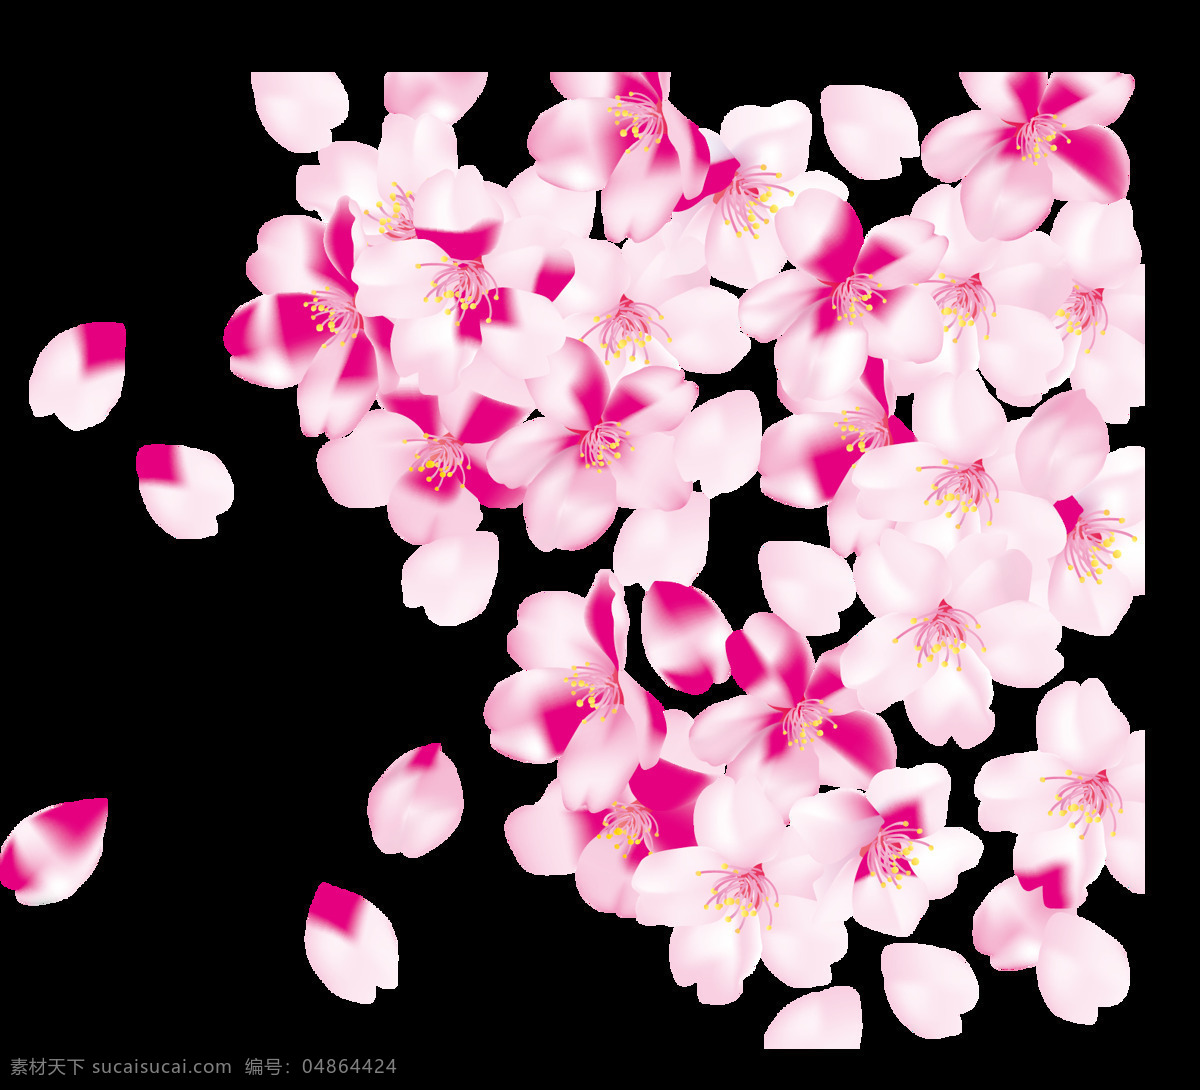 飞舞 悬浮 樱花瓣 樱花树 花蕊 艳丽 粉色樱花 装饰元素 粉色花瓣